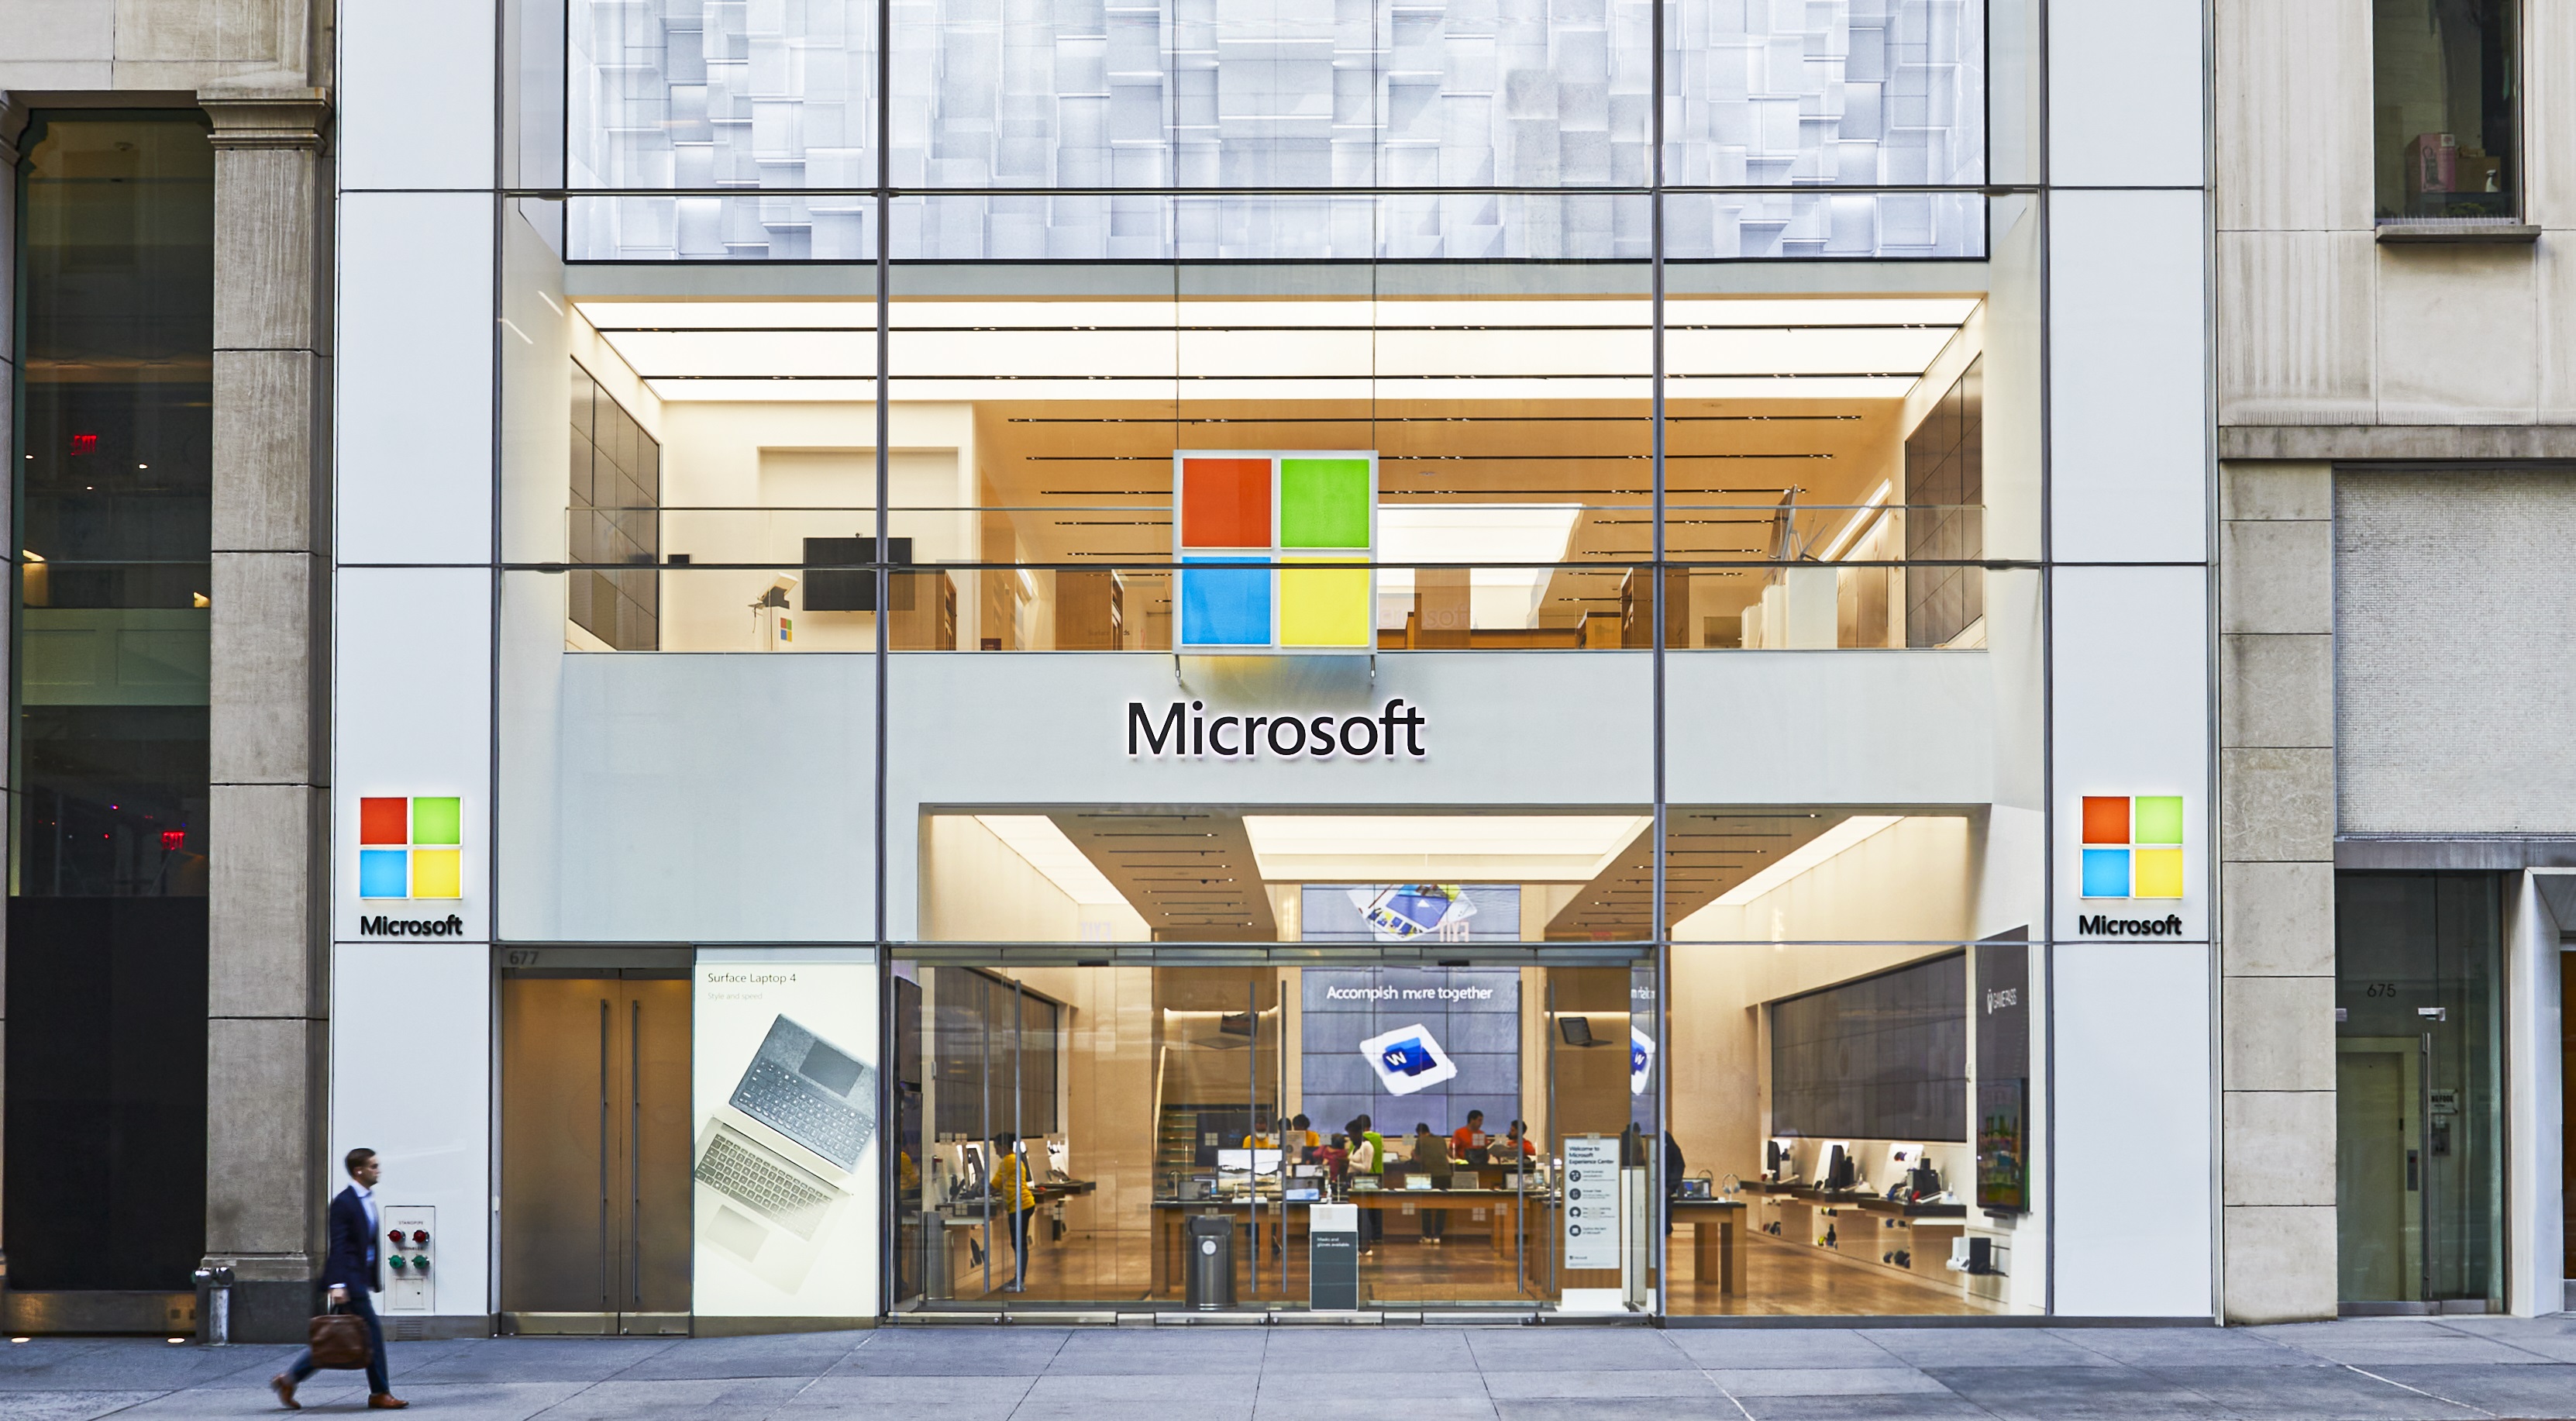 Microsoft Store Fifth Avenue - New York, NY